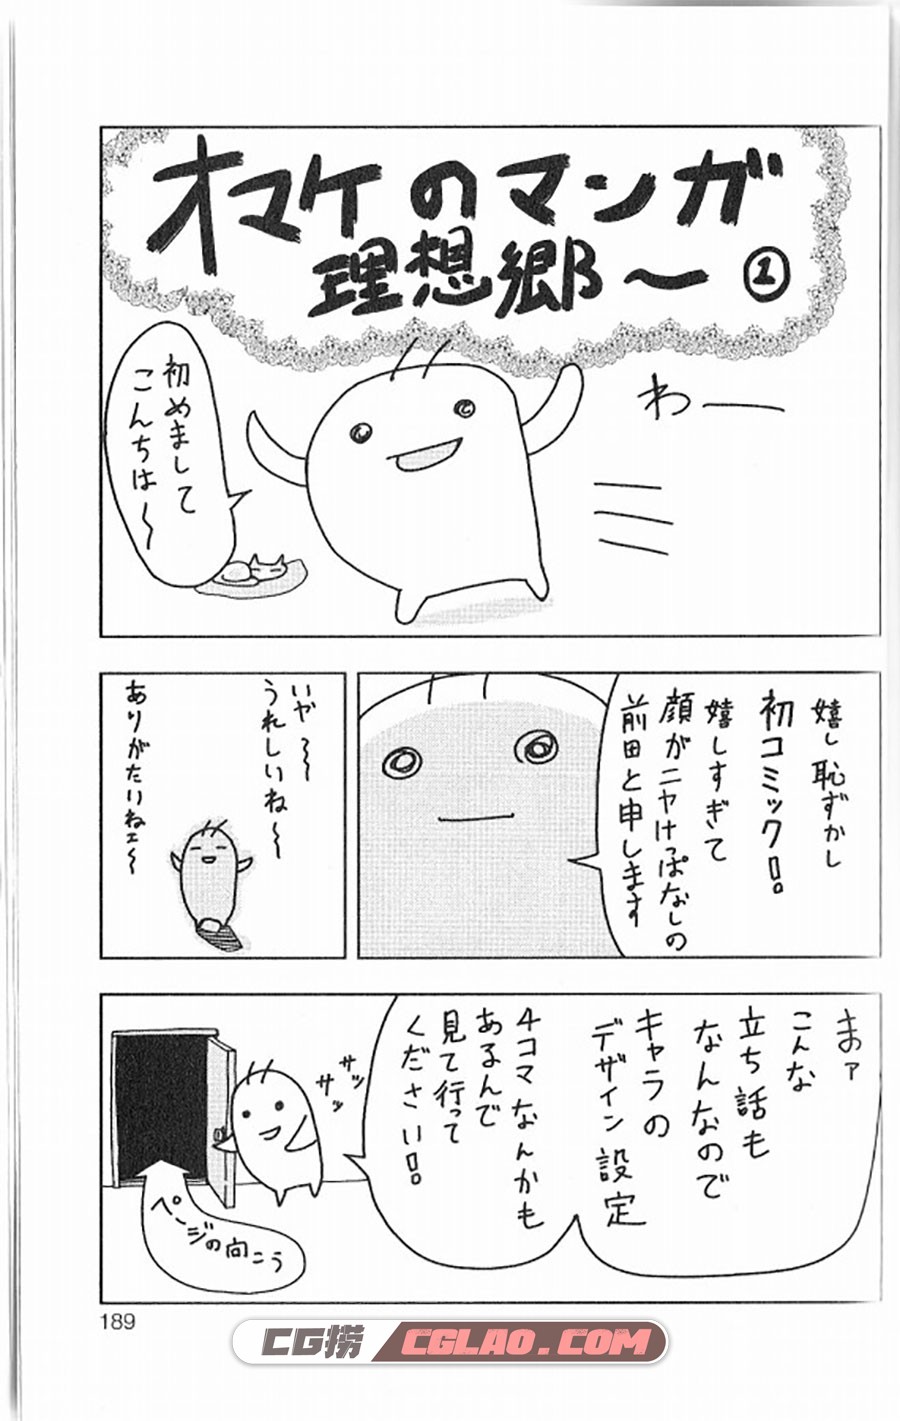 露露医生 前田理想 1-3卷 漫画全集下载 百度网盘,IMG_0100.jpg